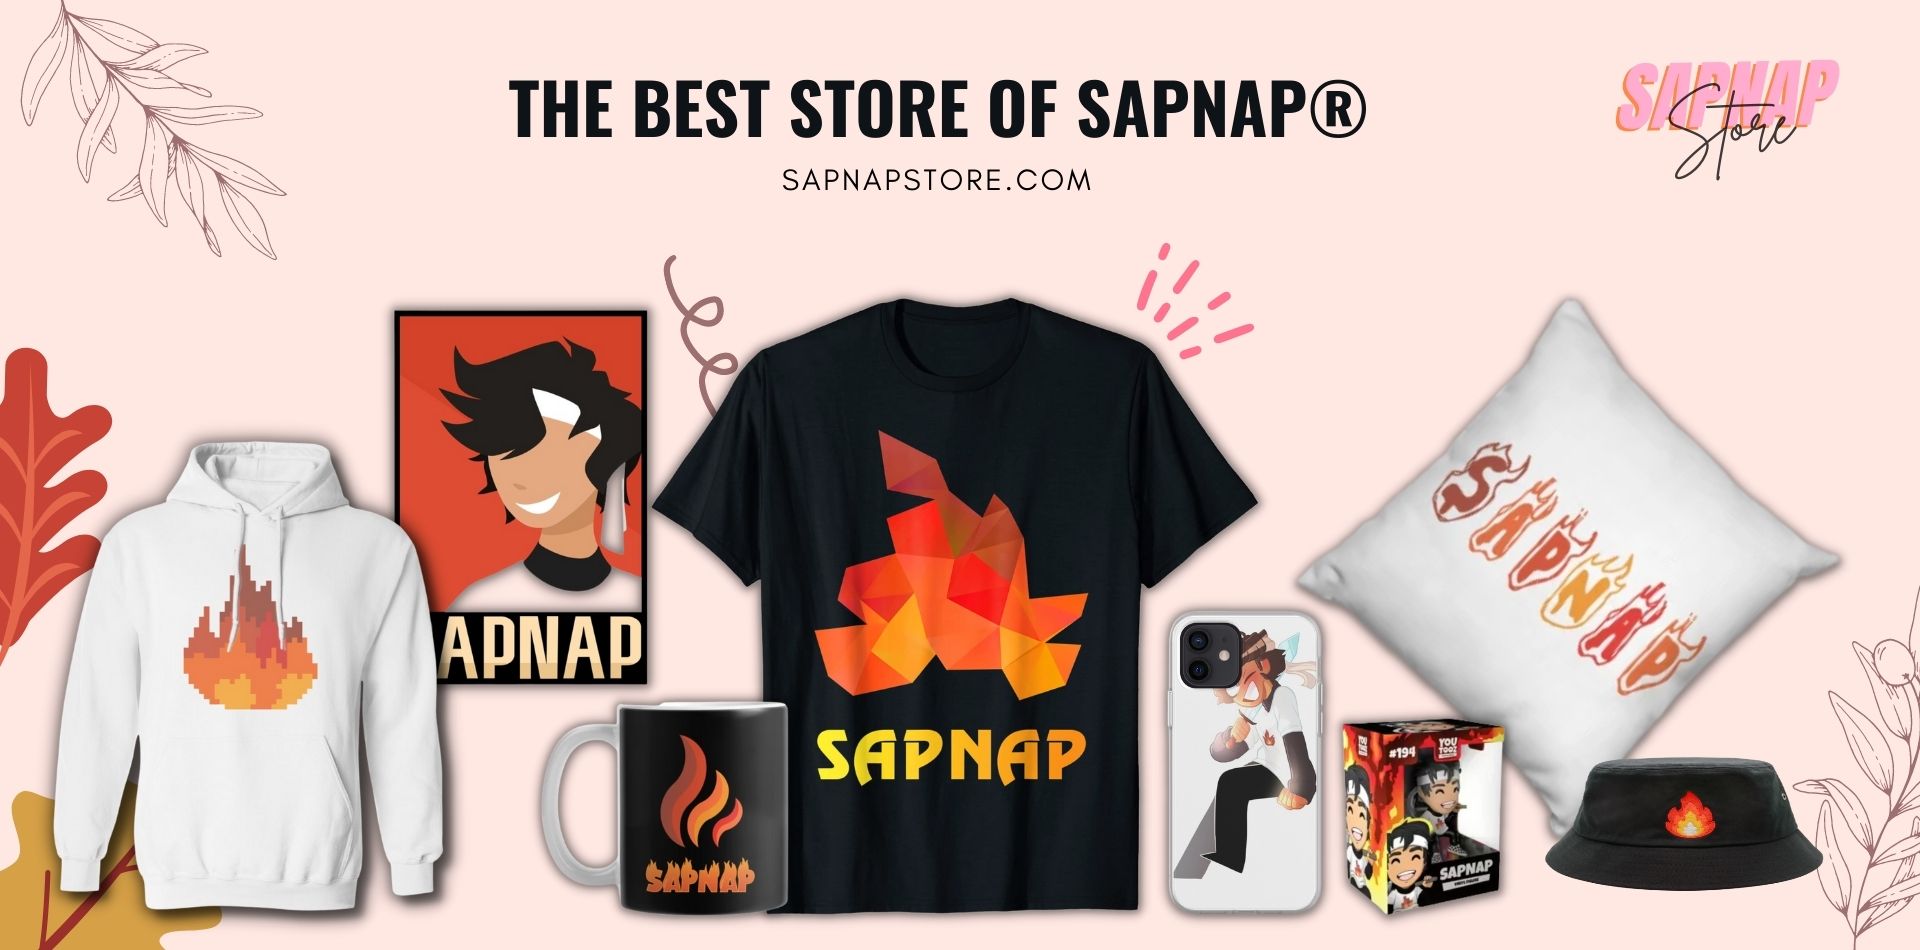 Sapnap Store Web Banner - Sapnap Store